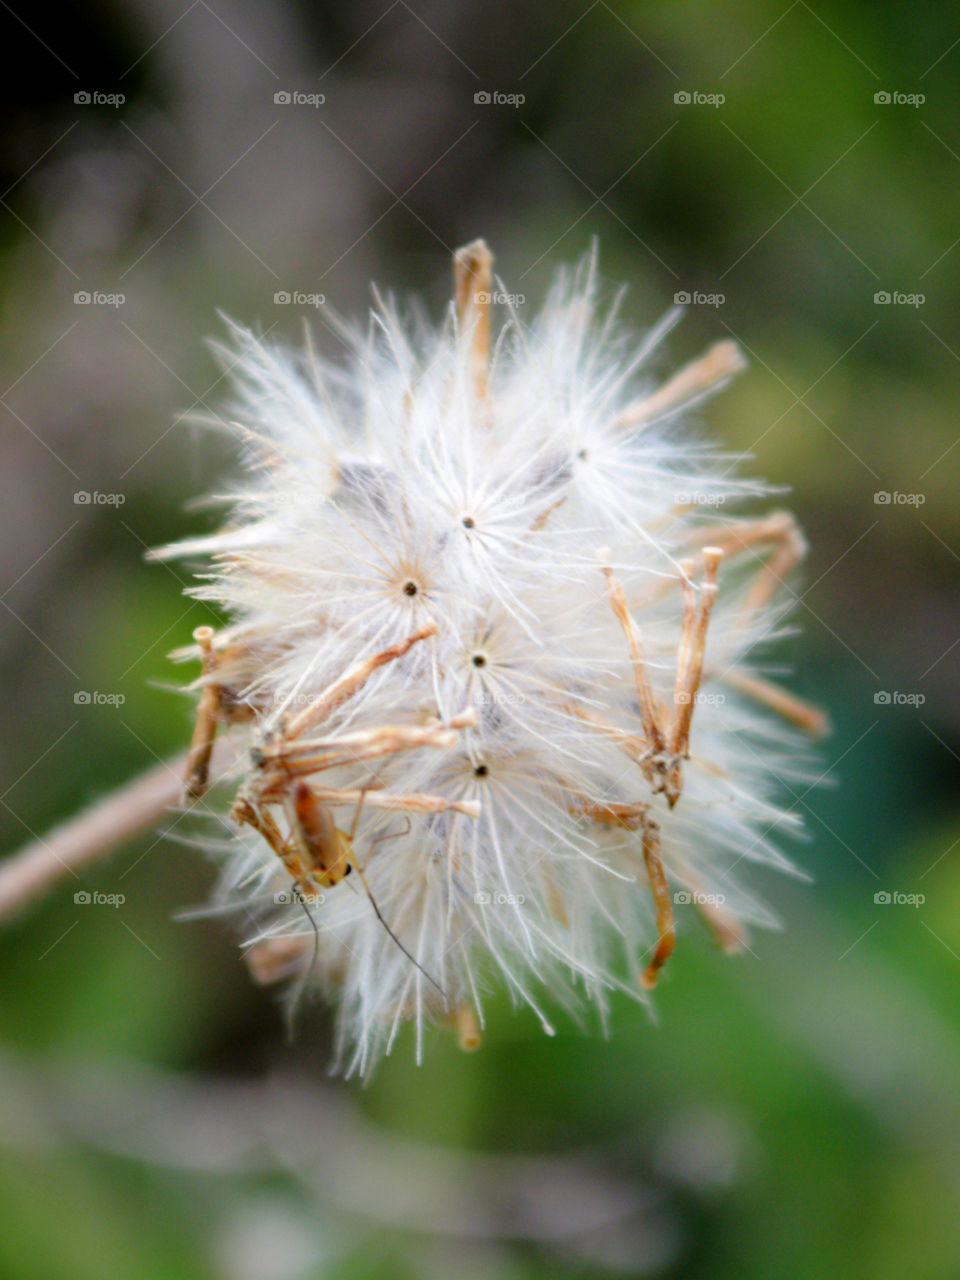 coatbutton flower